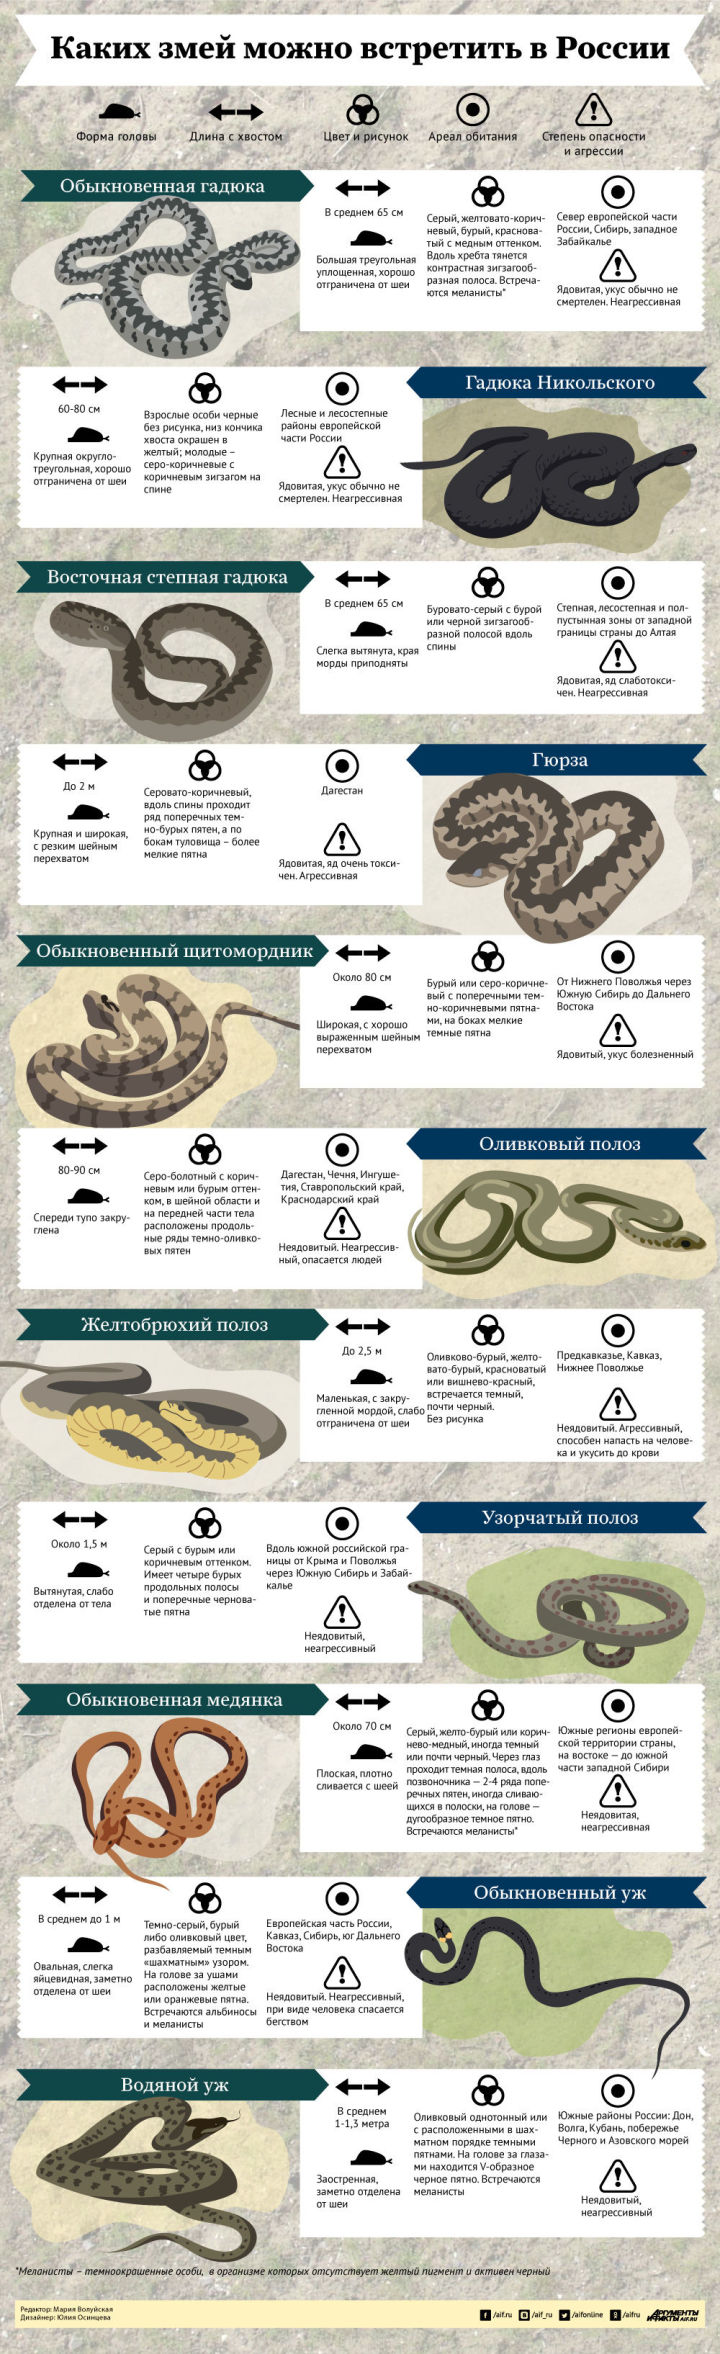 Каких змей и где можно встретить в России?